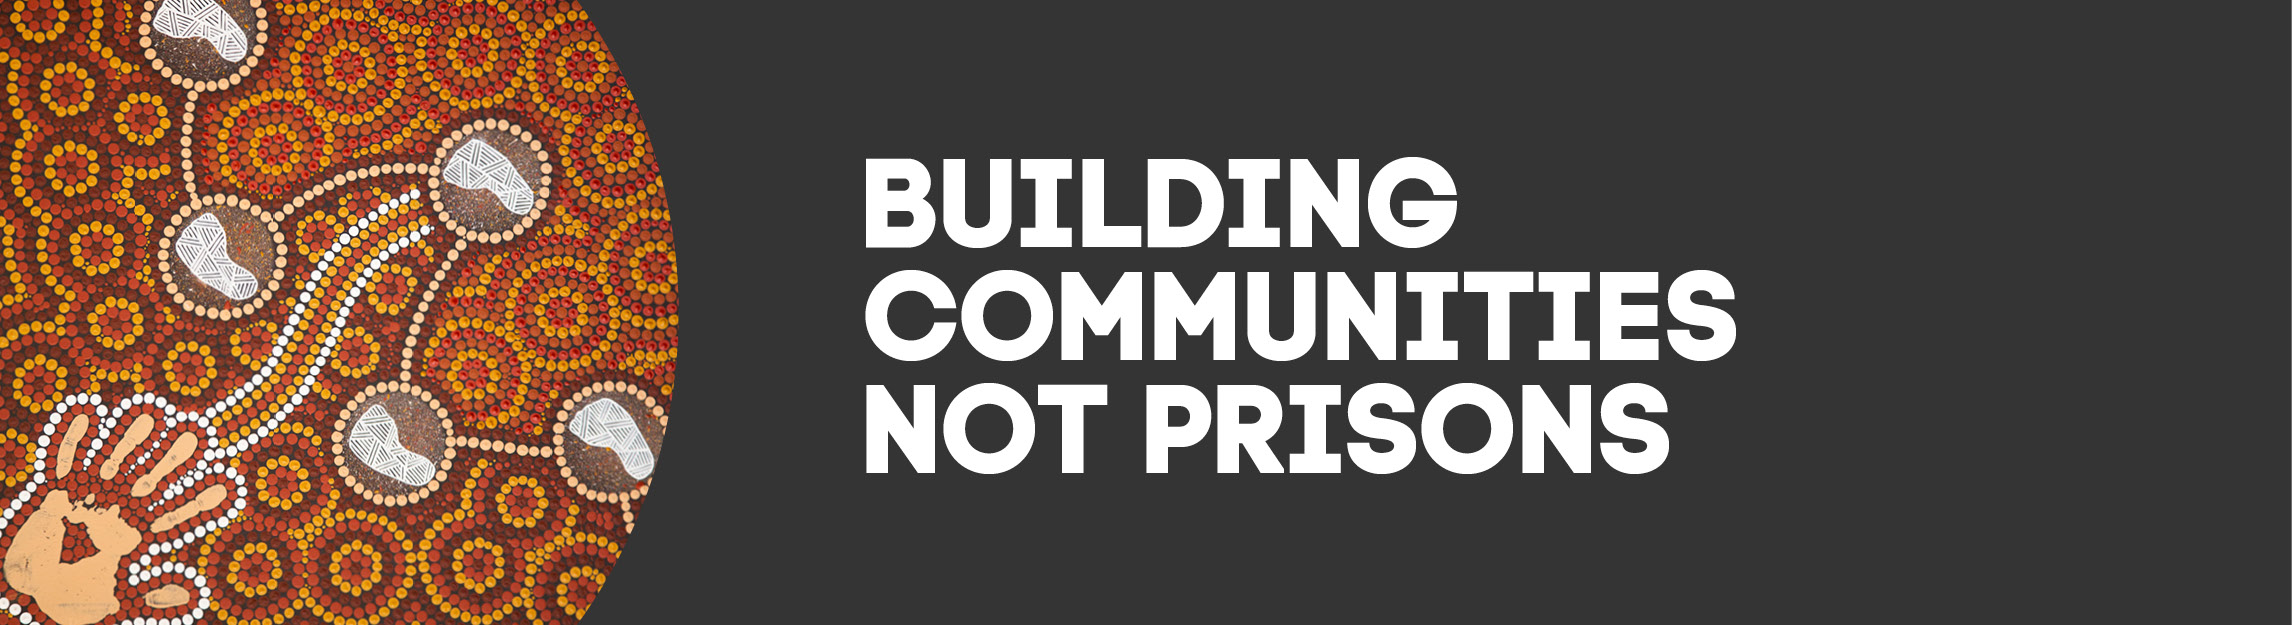 building communities not prisons